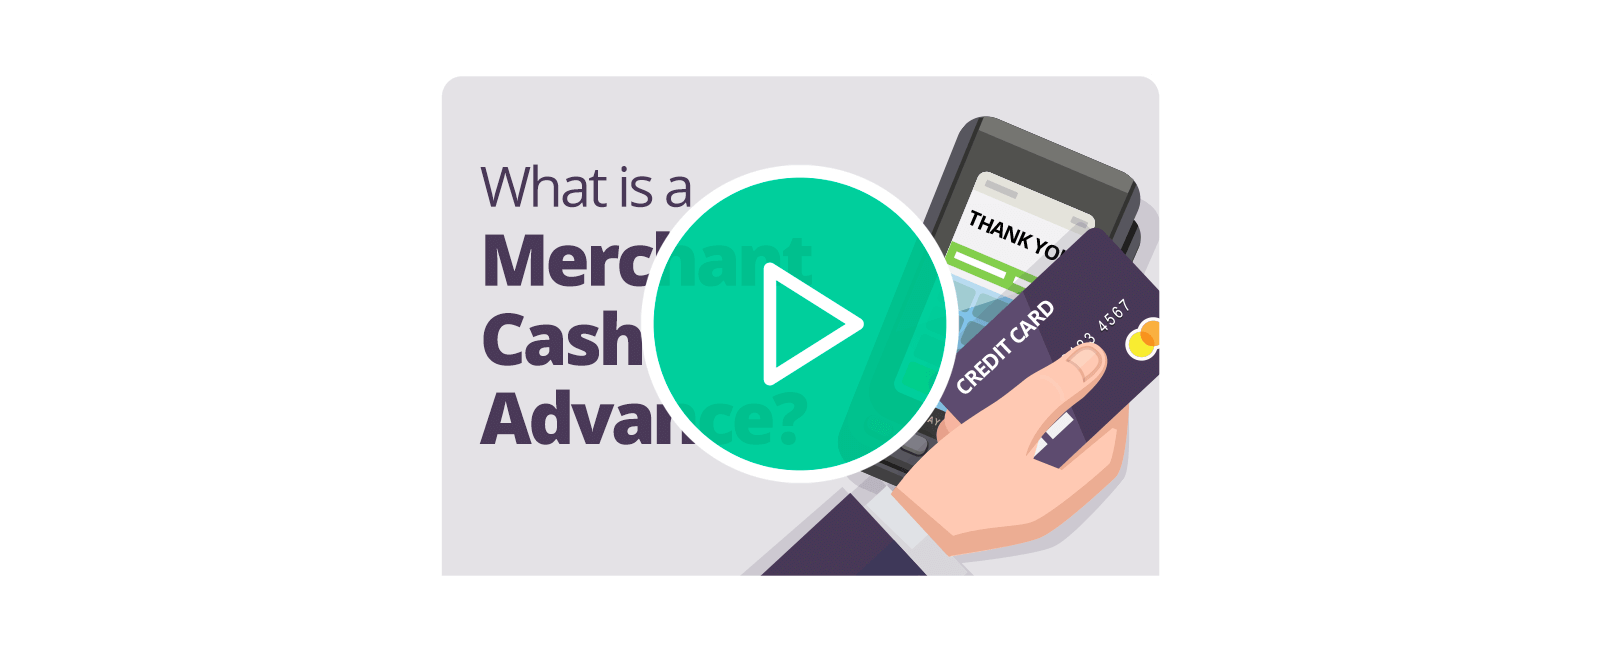 Merchant Loan Advance Video